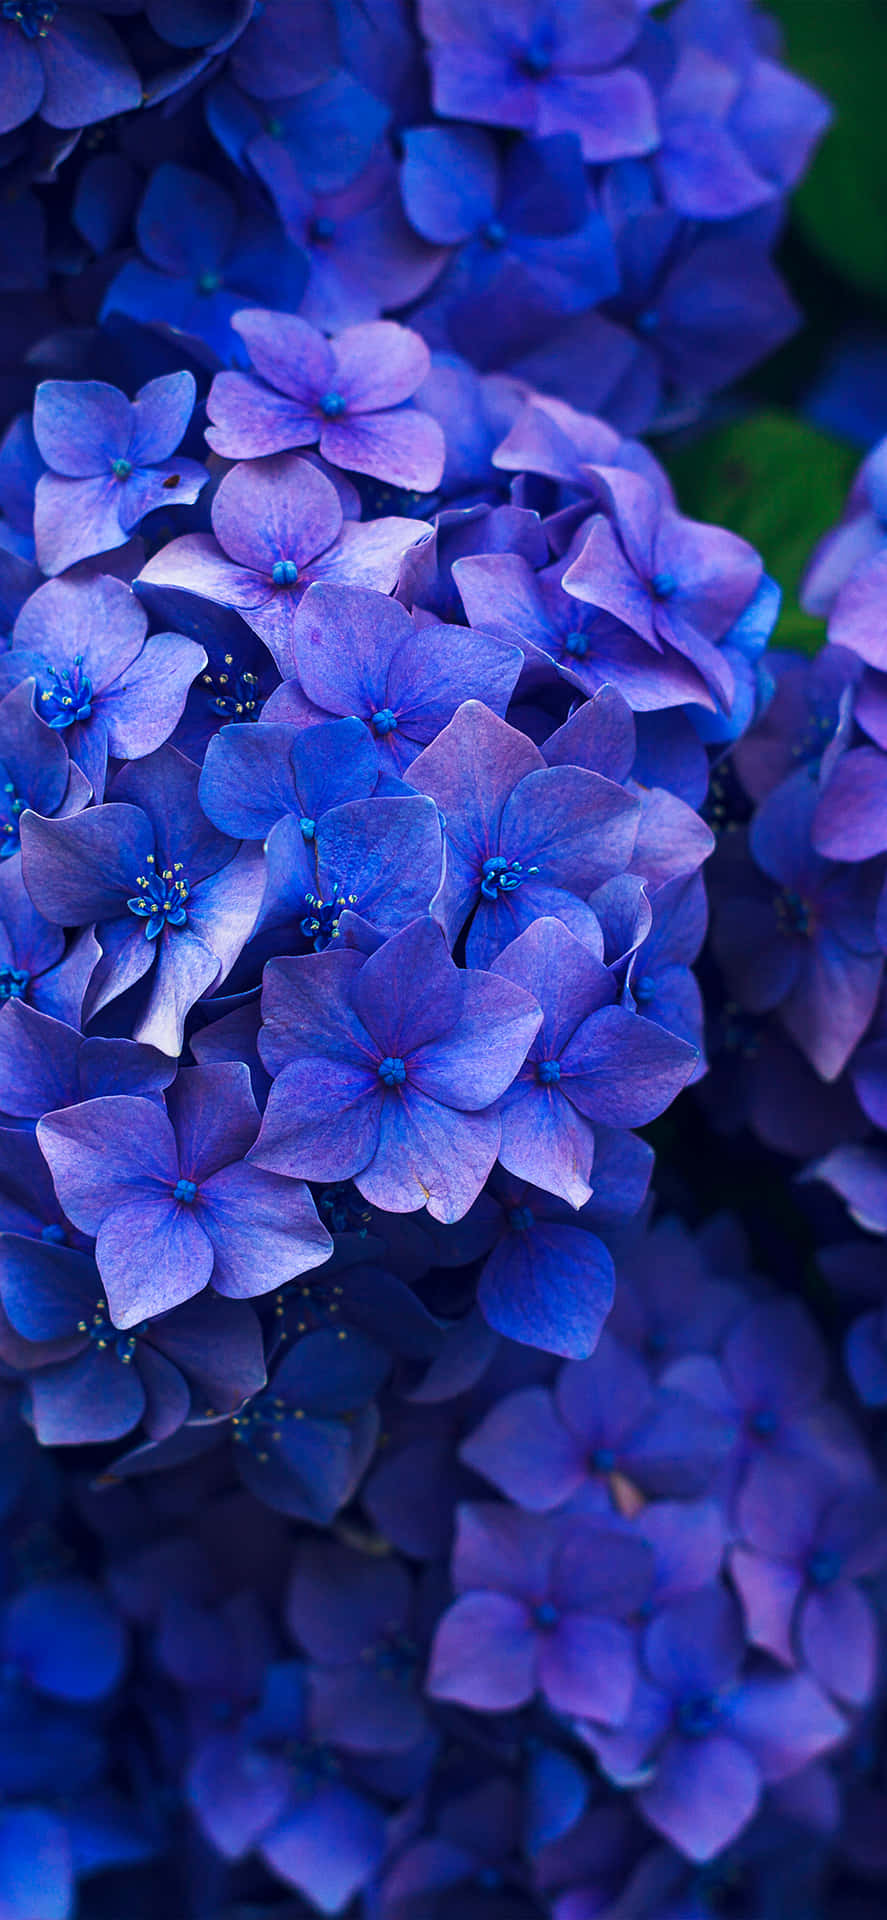 Hydrangeamörkblå Blommor Bild.